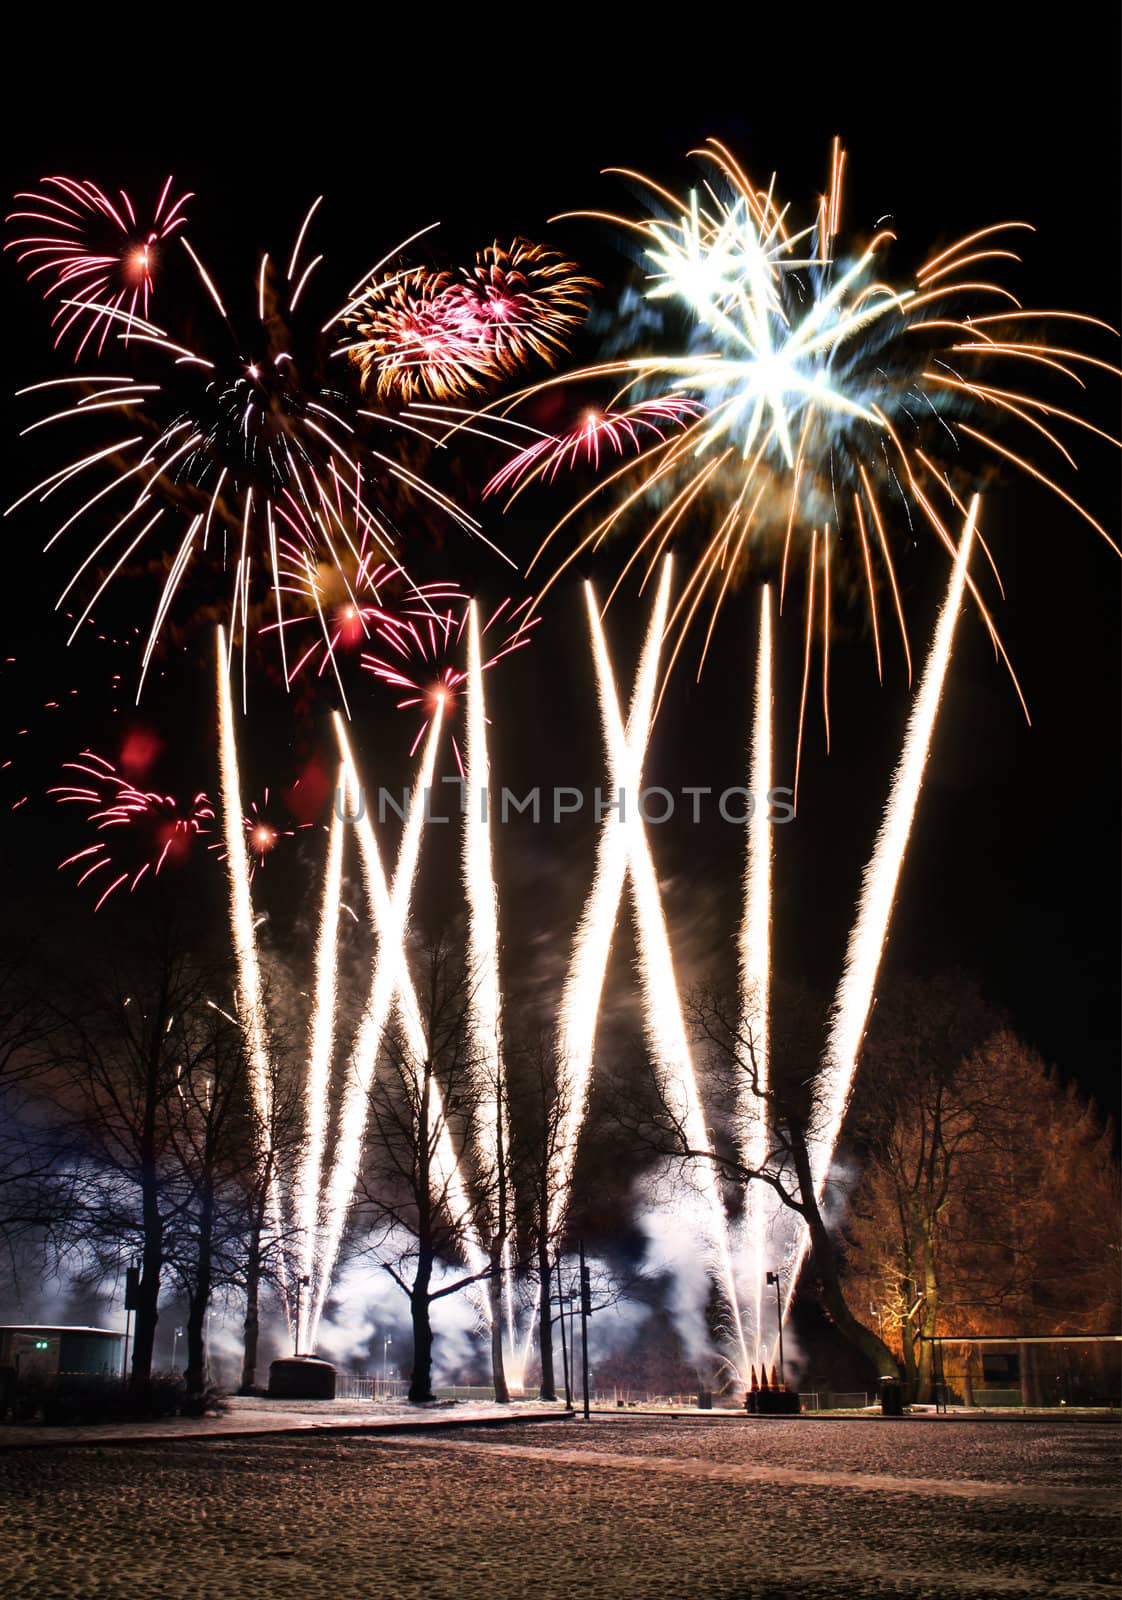 Fireworks in park by anterovium